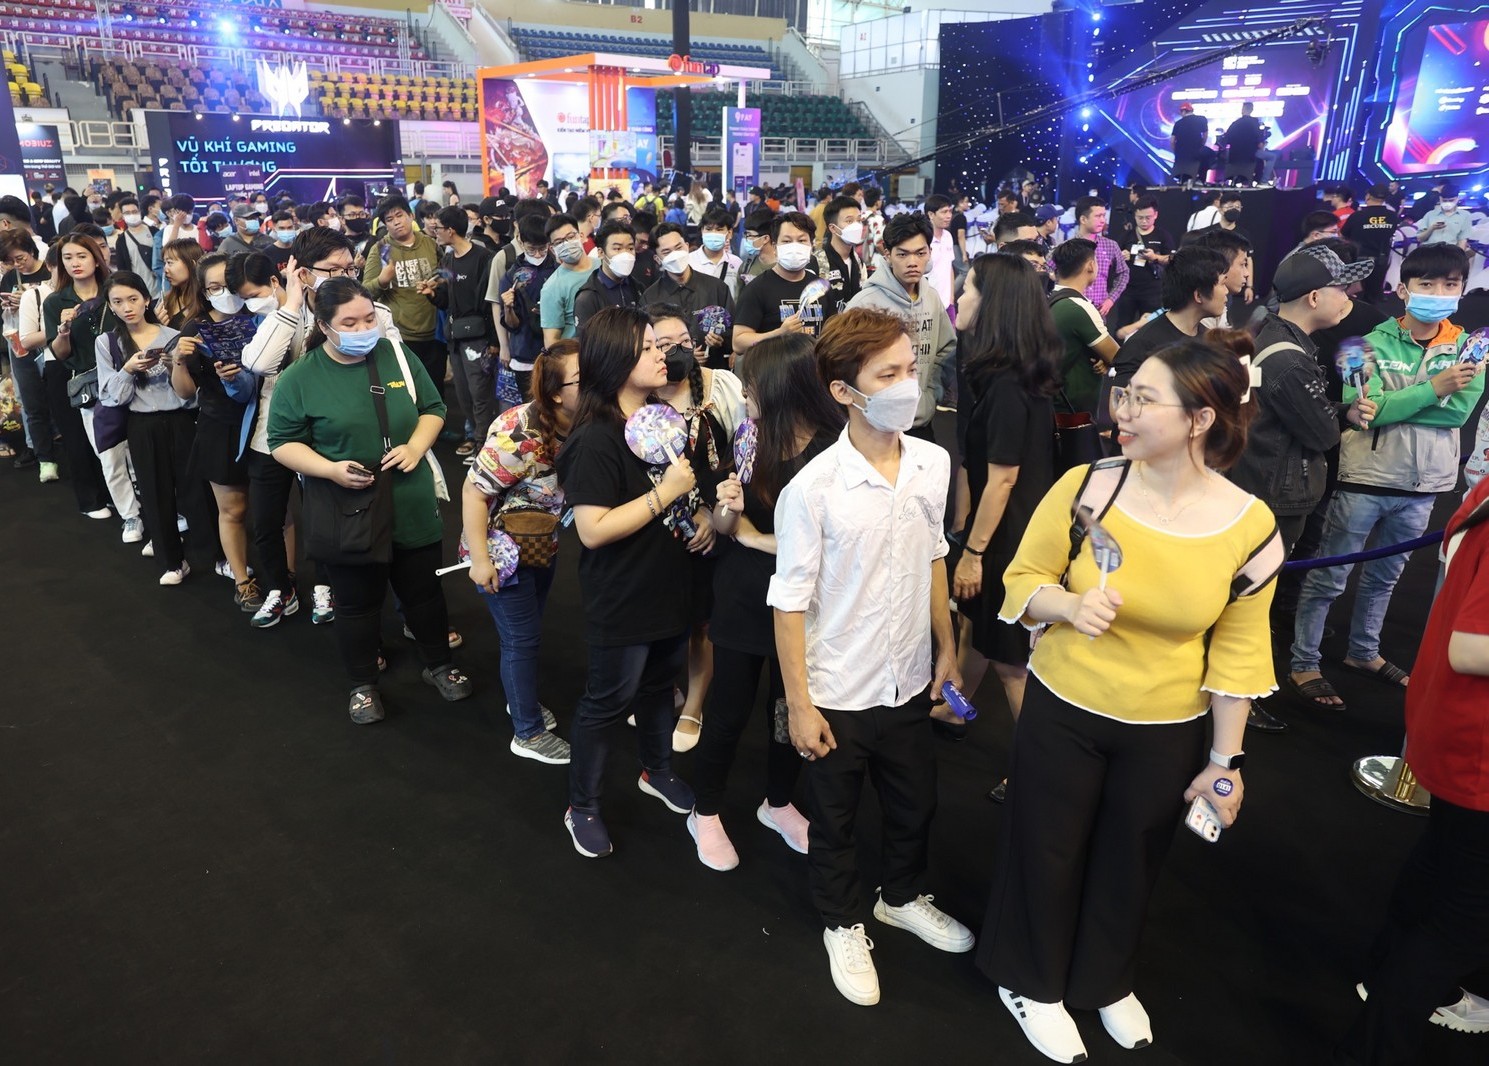 Khai mạc Ngày hội Game Việt Nam 2023 với nhiều hoạt động đáng chú ý